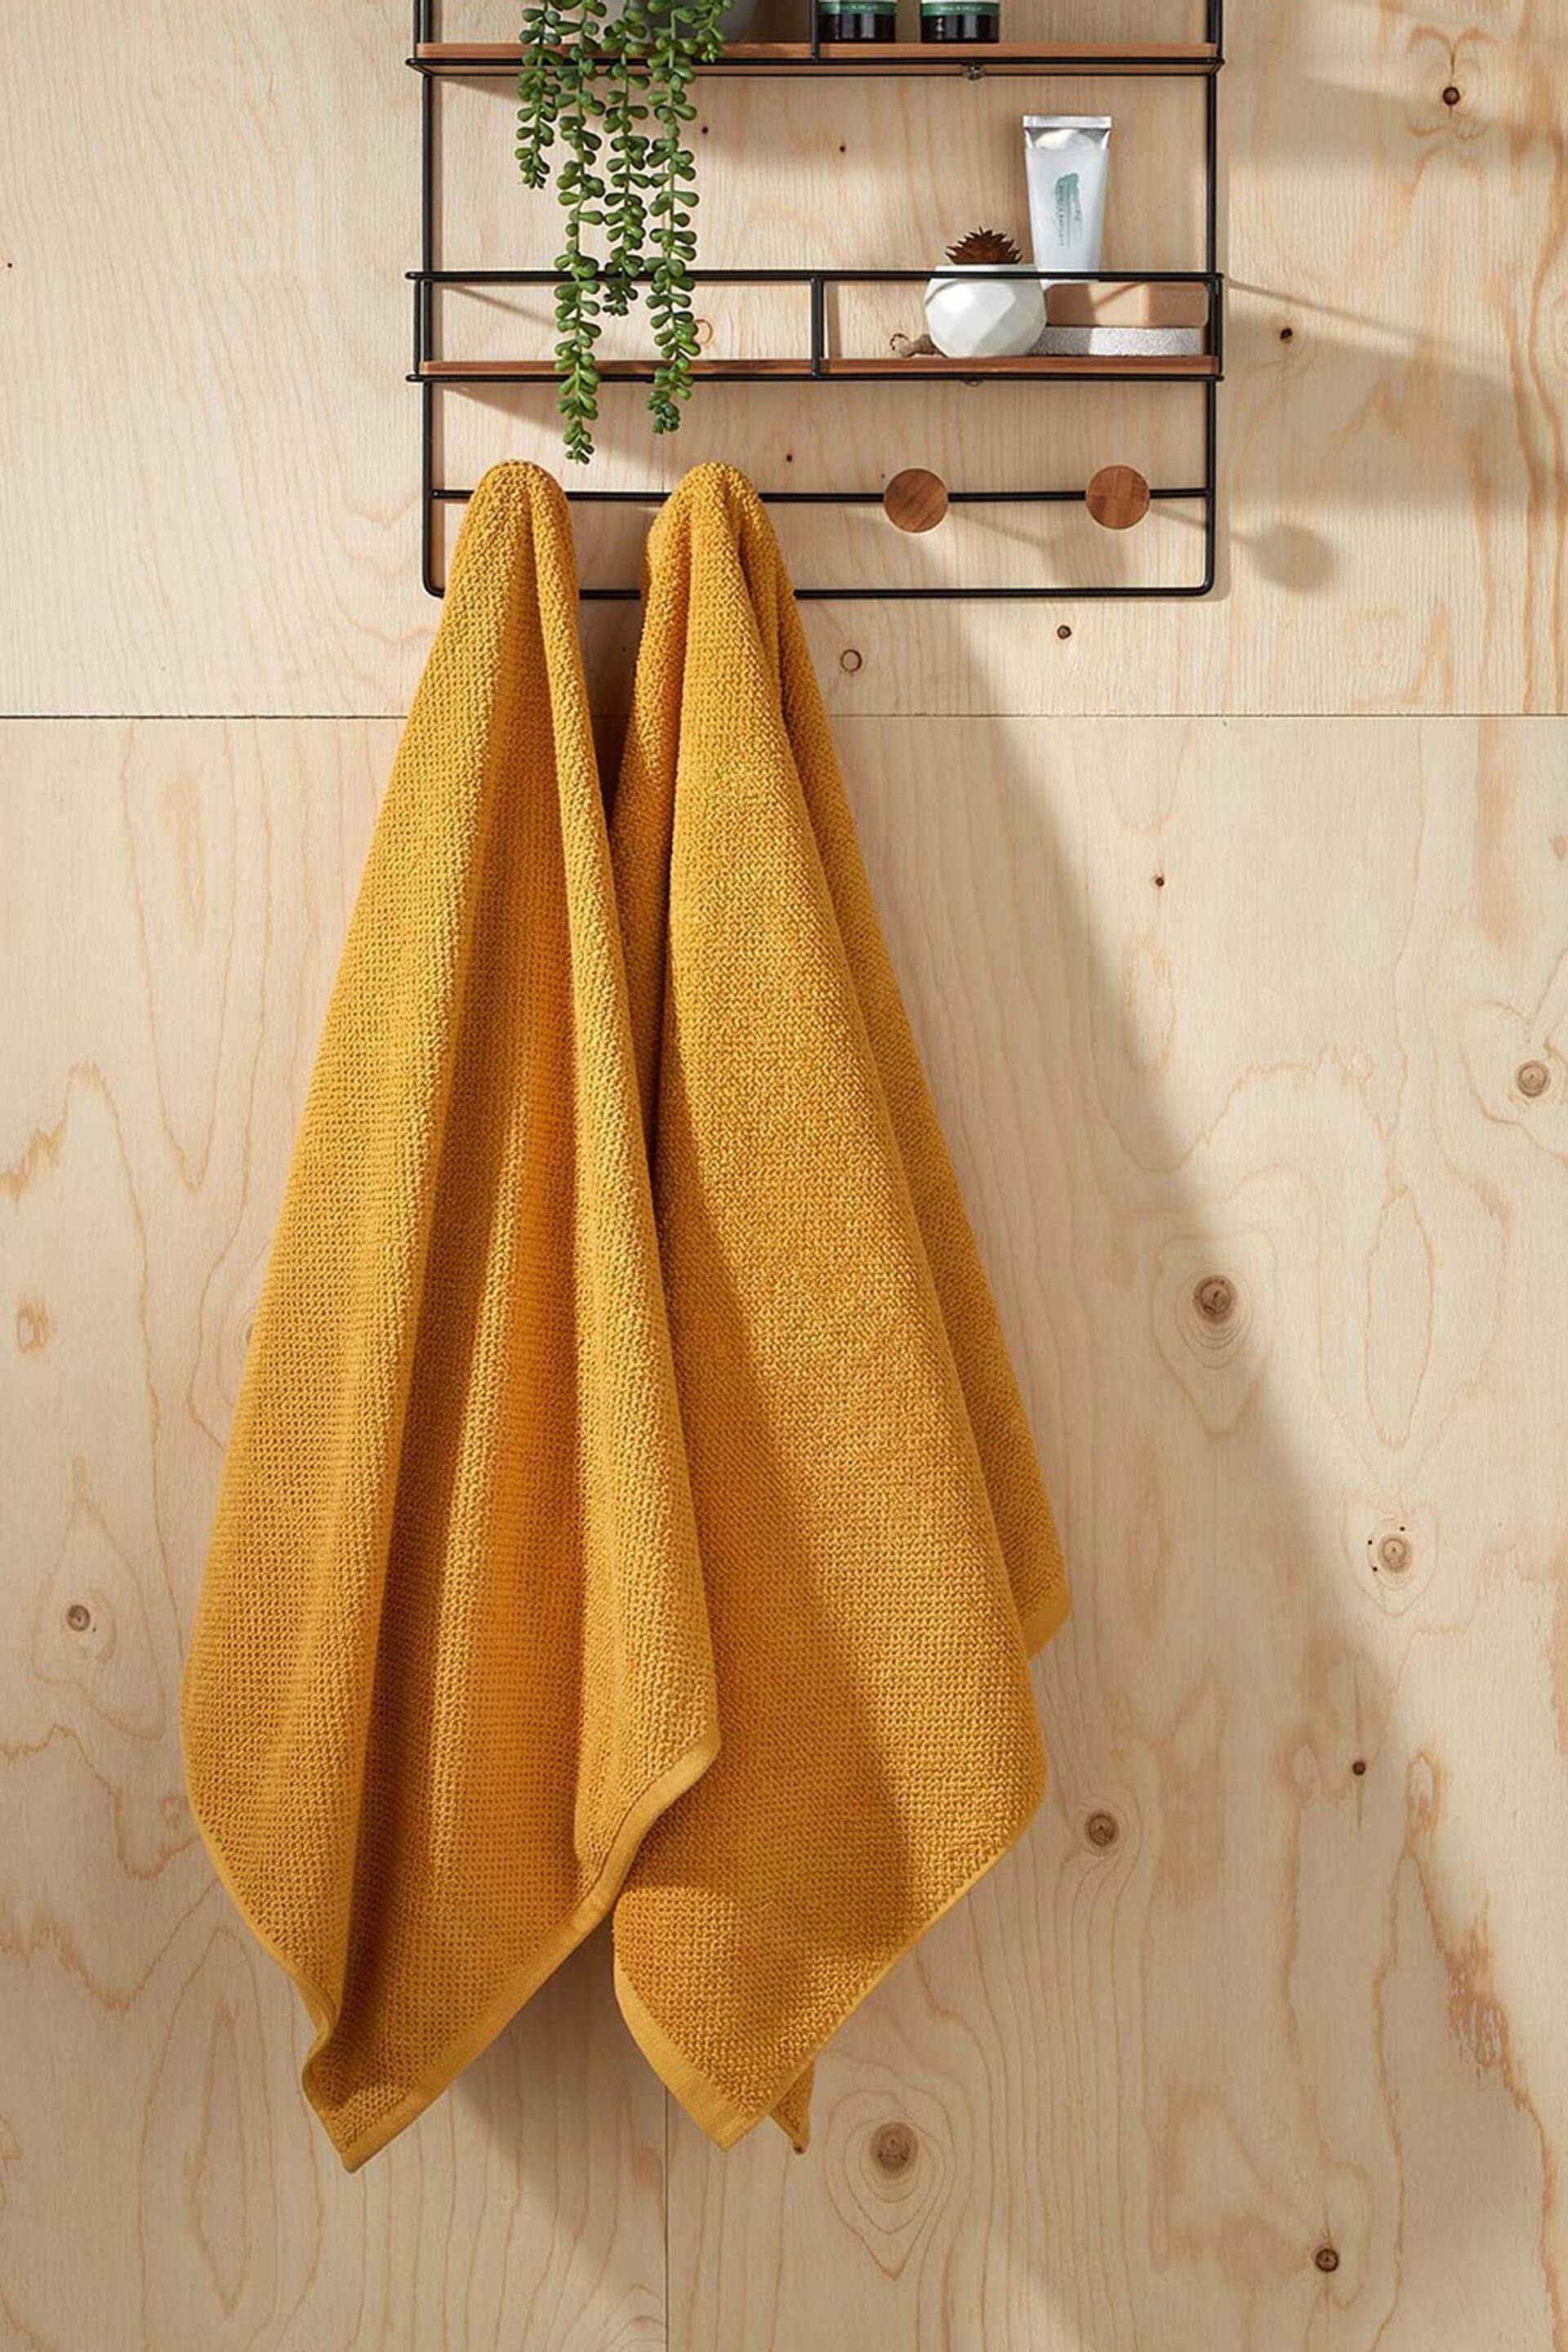 Christy Saffron Brixton - 600 GSM Cotton Textured Bath Towel - Image 1 of 4